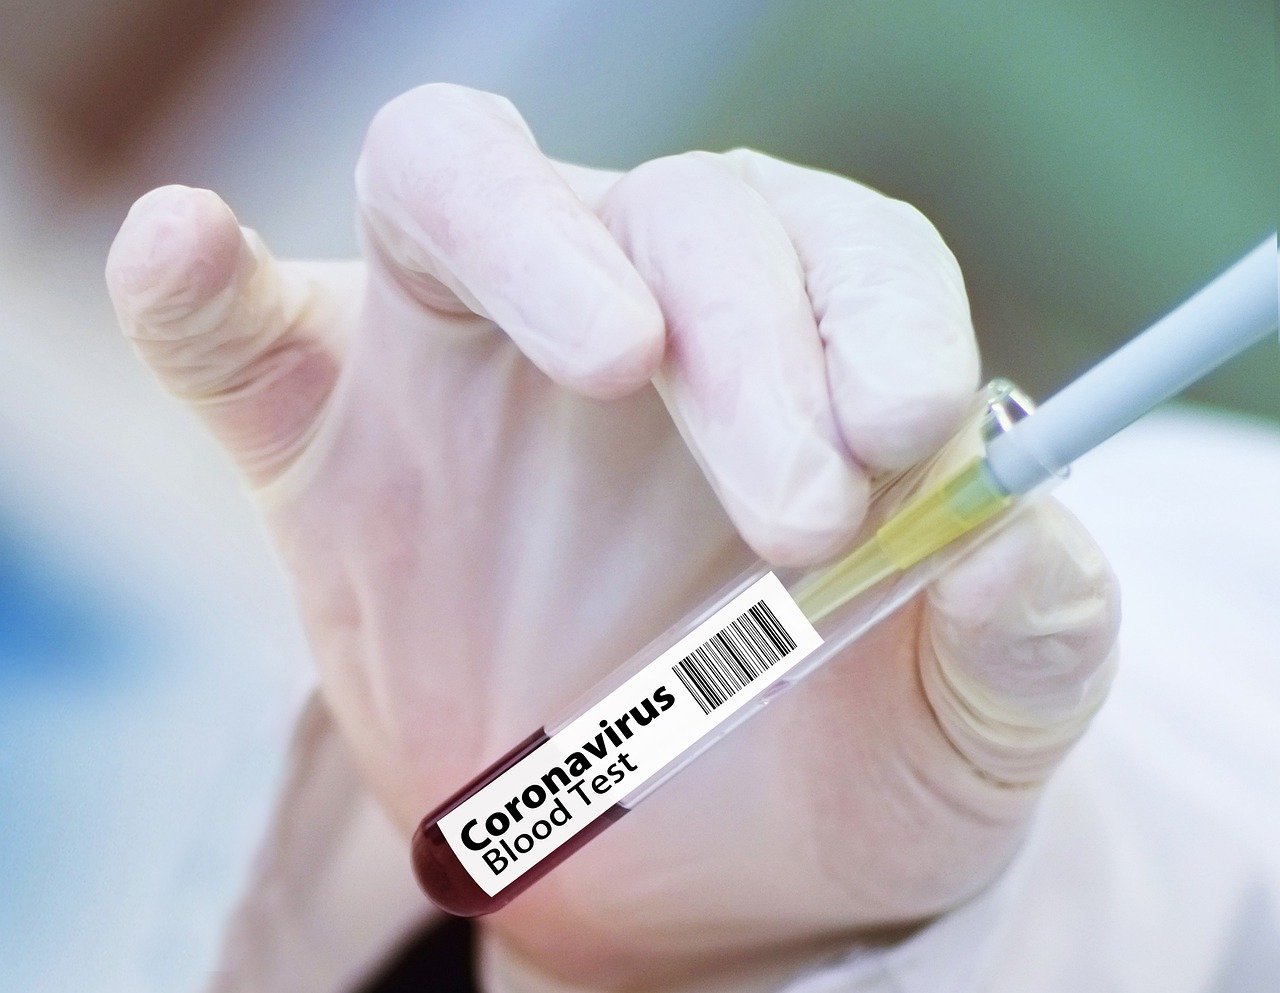 Coronavirus, undici nuovi casi. Sono tutti in Valdarno